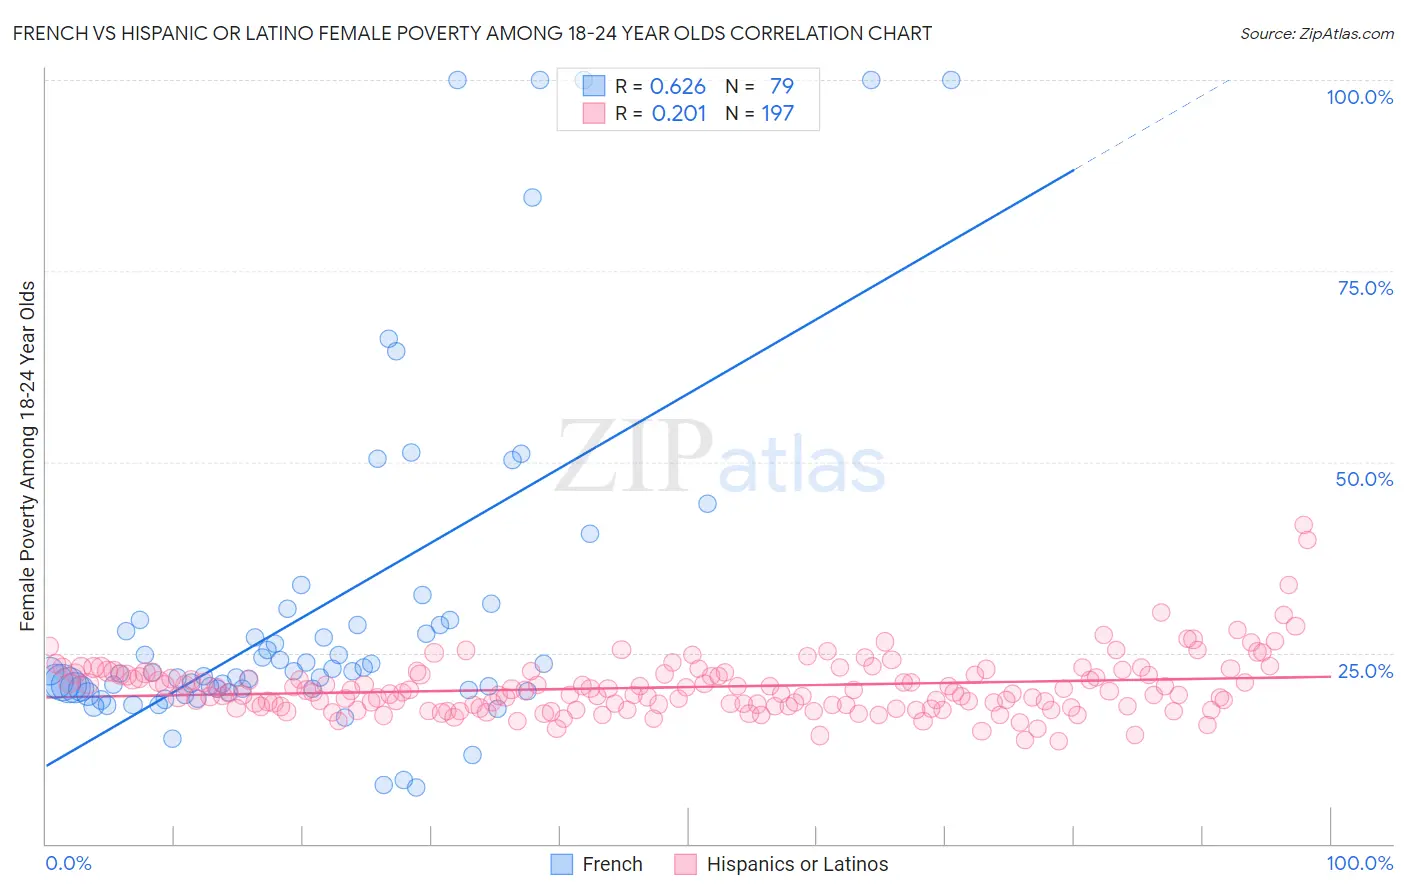 French vs Hispanic or Latino Female Poverty Among 18-24 Year Olds